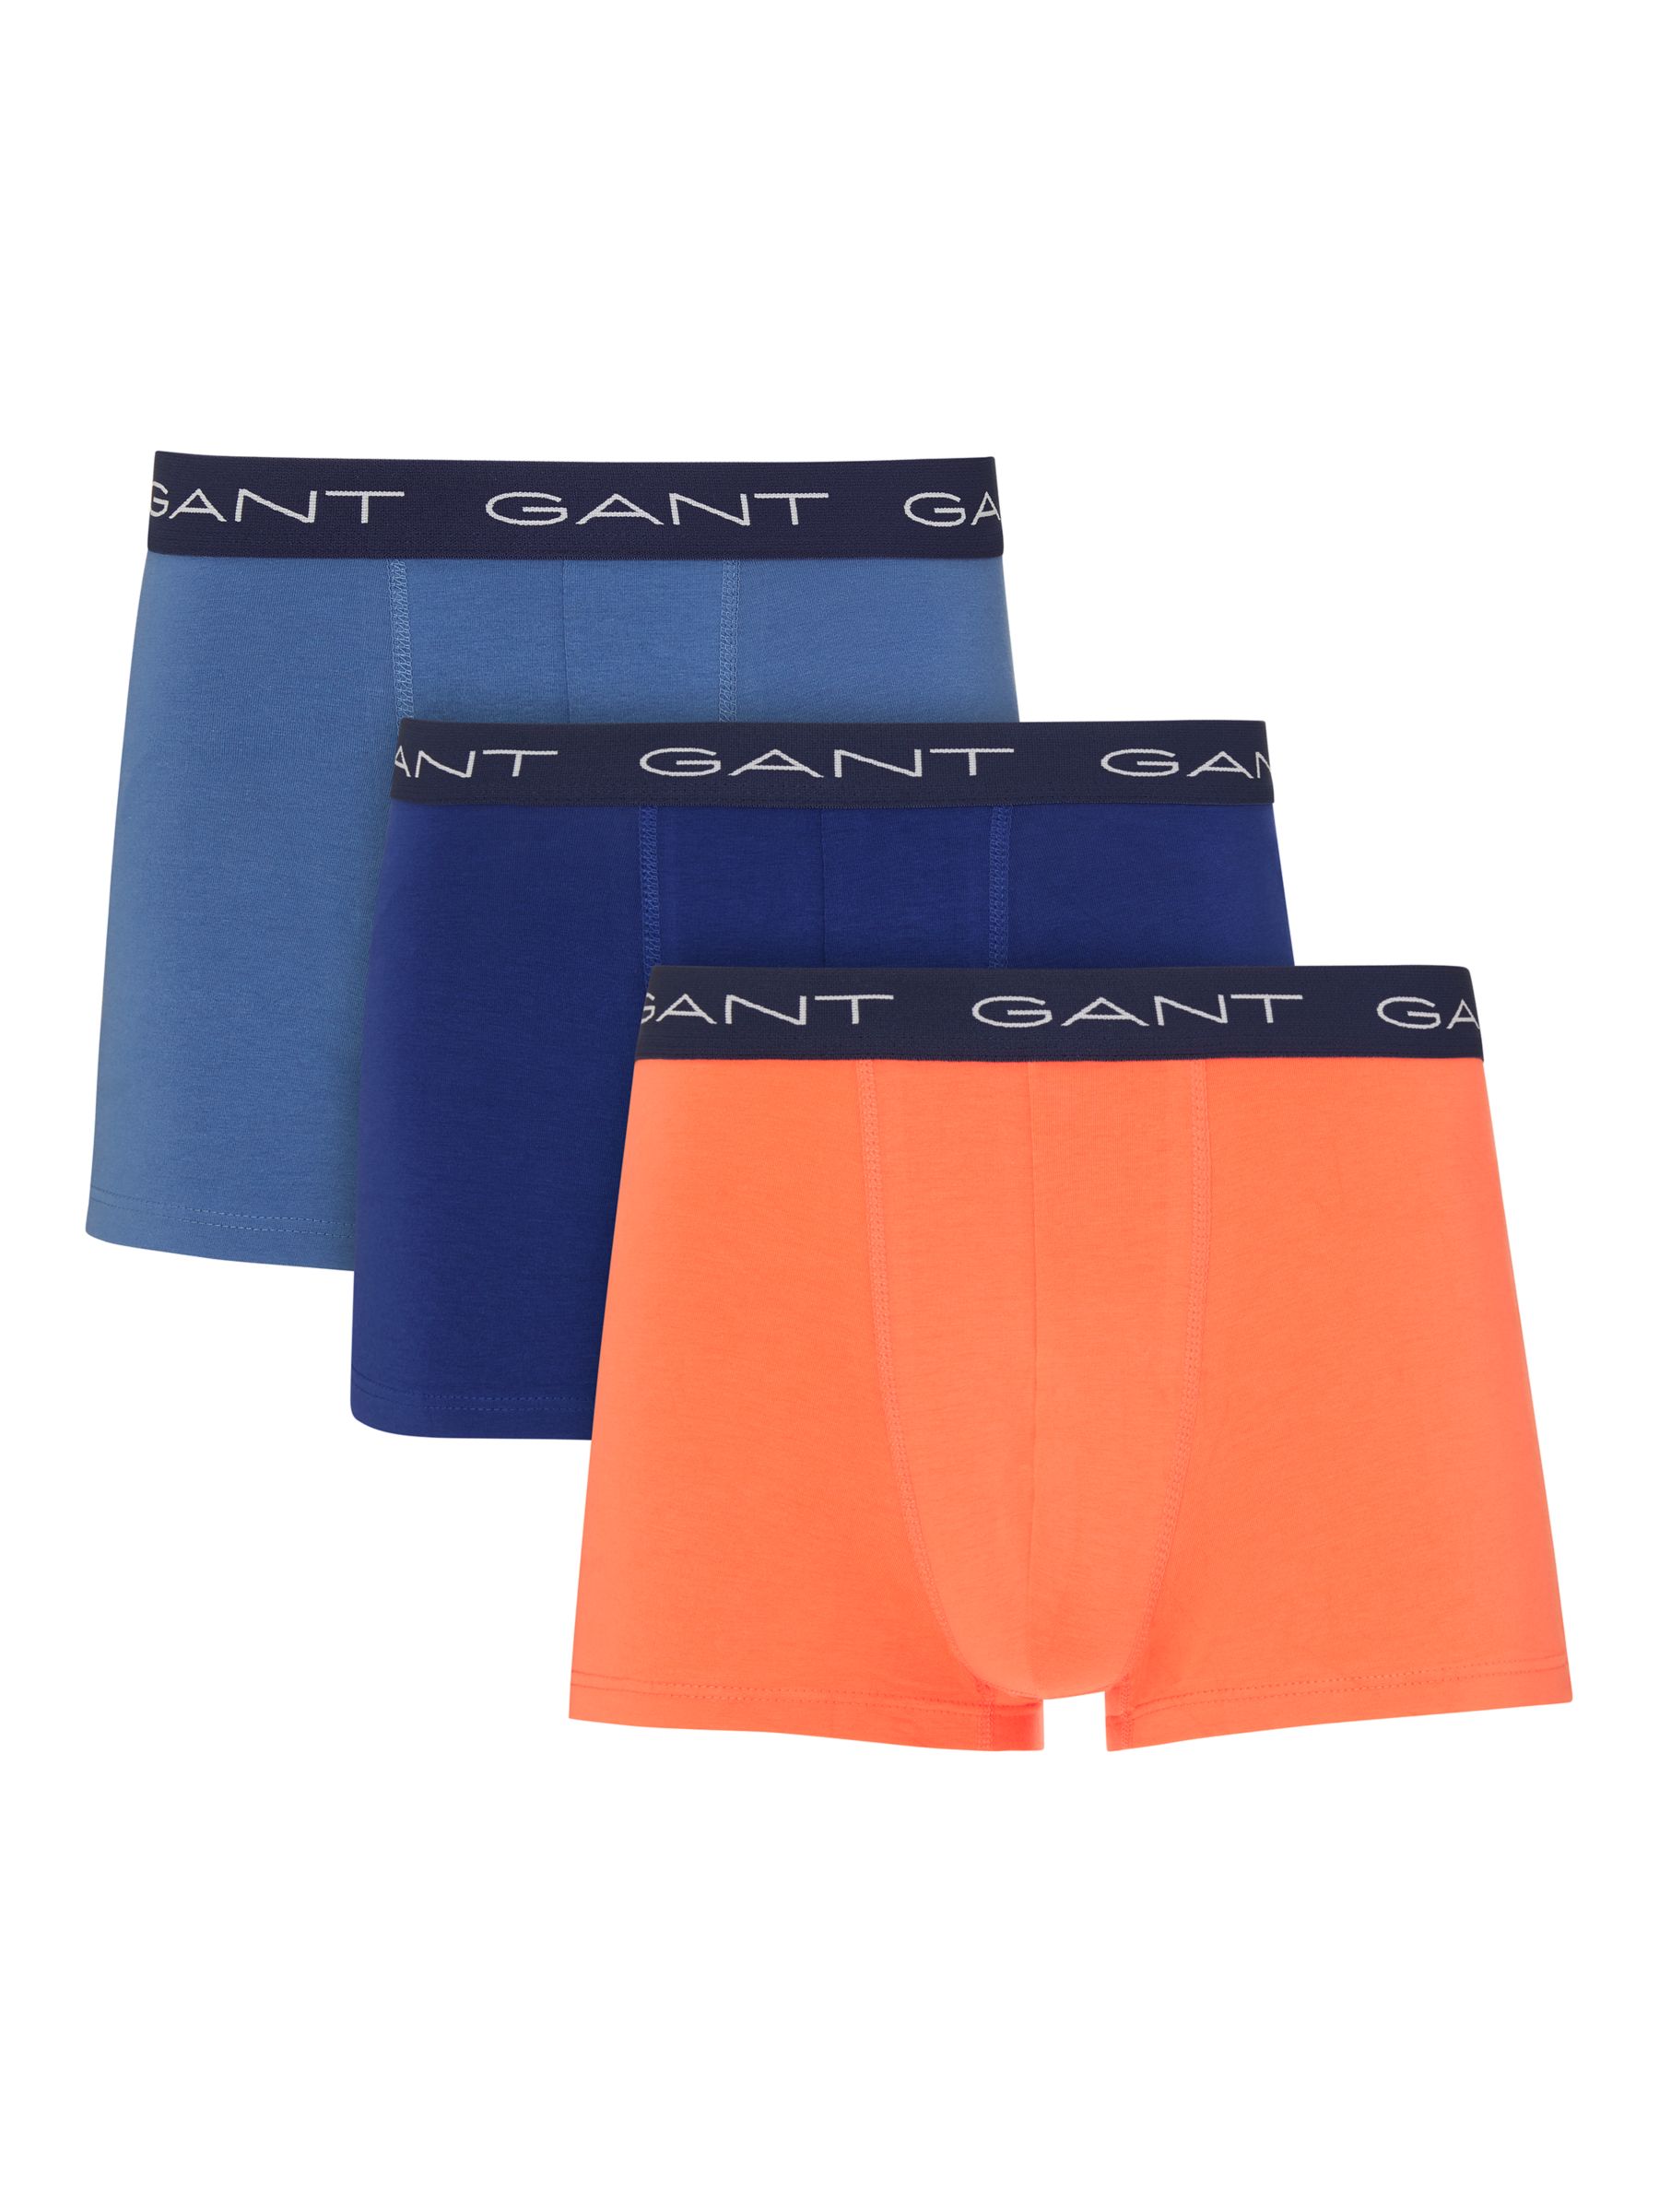 GANT Contrast Waistband Trunks, Pack of 3, Blue/Navy/Orange